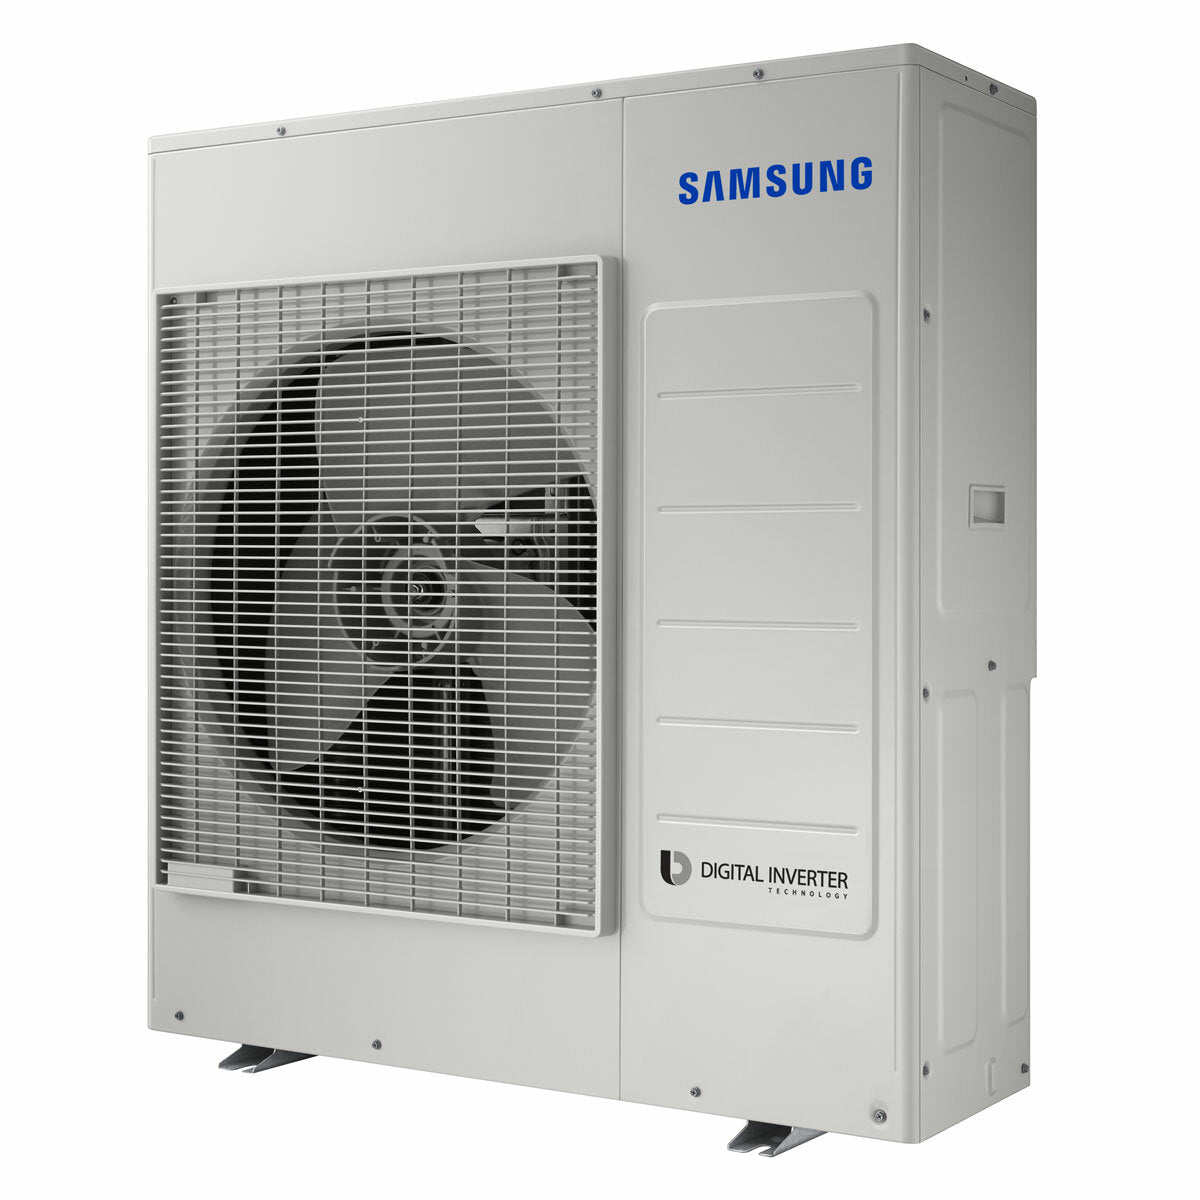 Samsung Cebu WLAN Klimaanlage Penta Split 7000 + 9000 + 12000 + 12000 + 12000 BTU Wechselrichter A++ WLAN Außengerät 10,0 kW